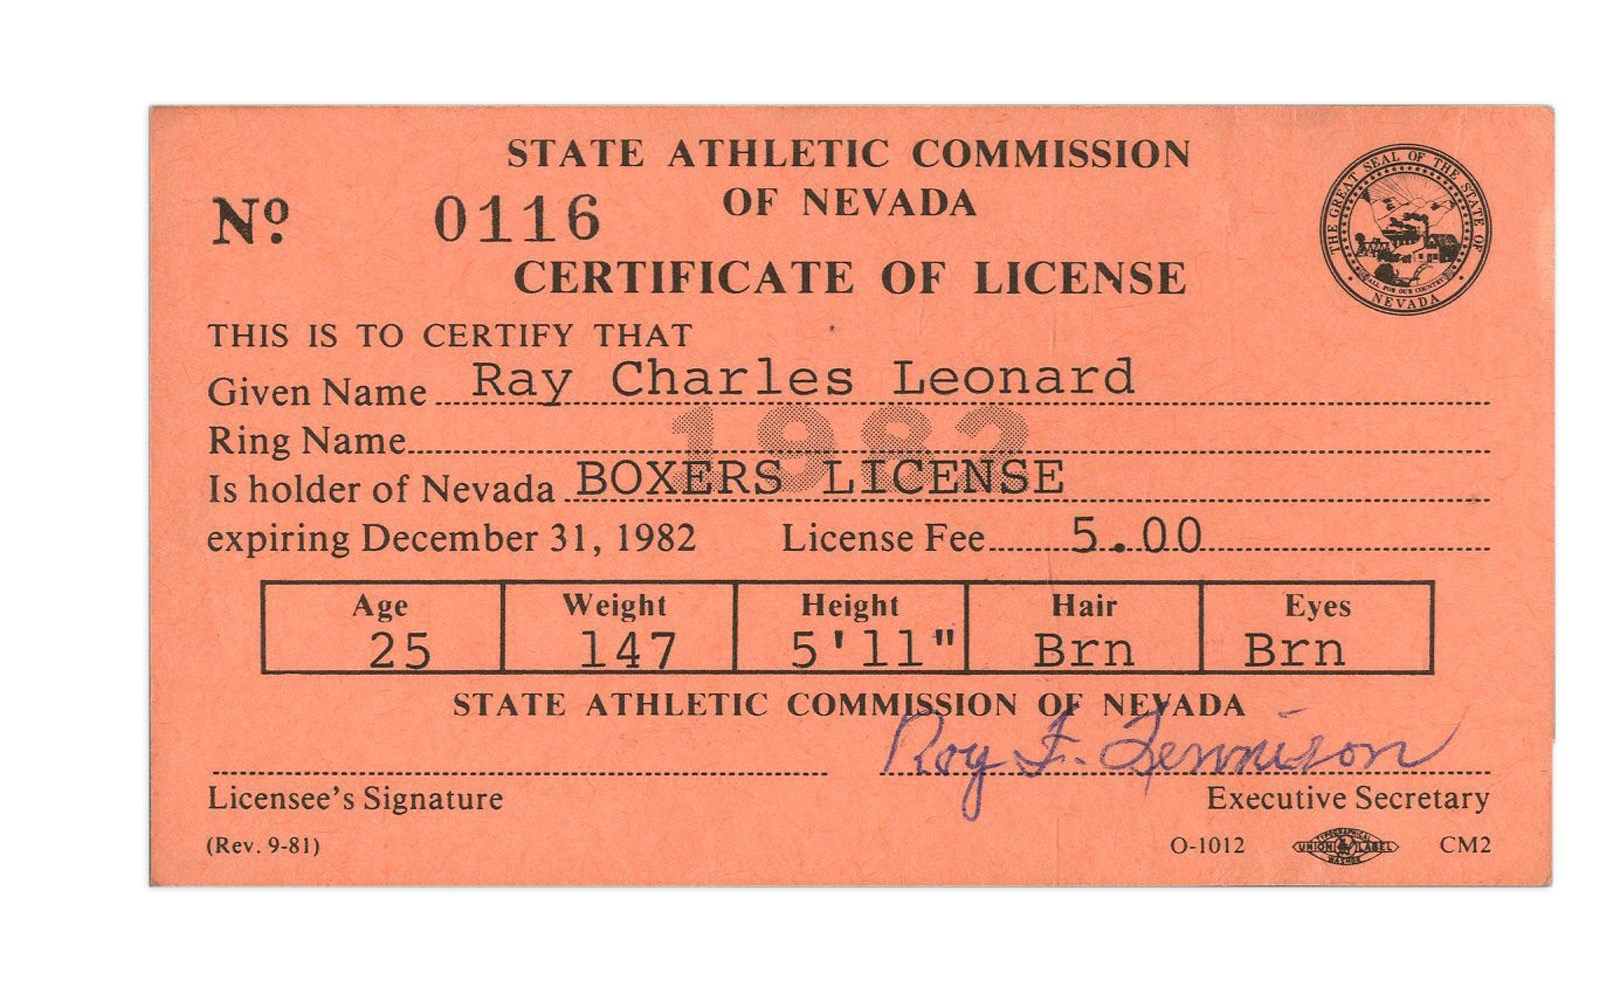 Muhammad Ali & Boxing - Sugar Ray Leonard Boxing License (1982)